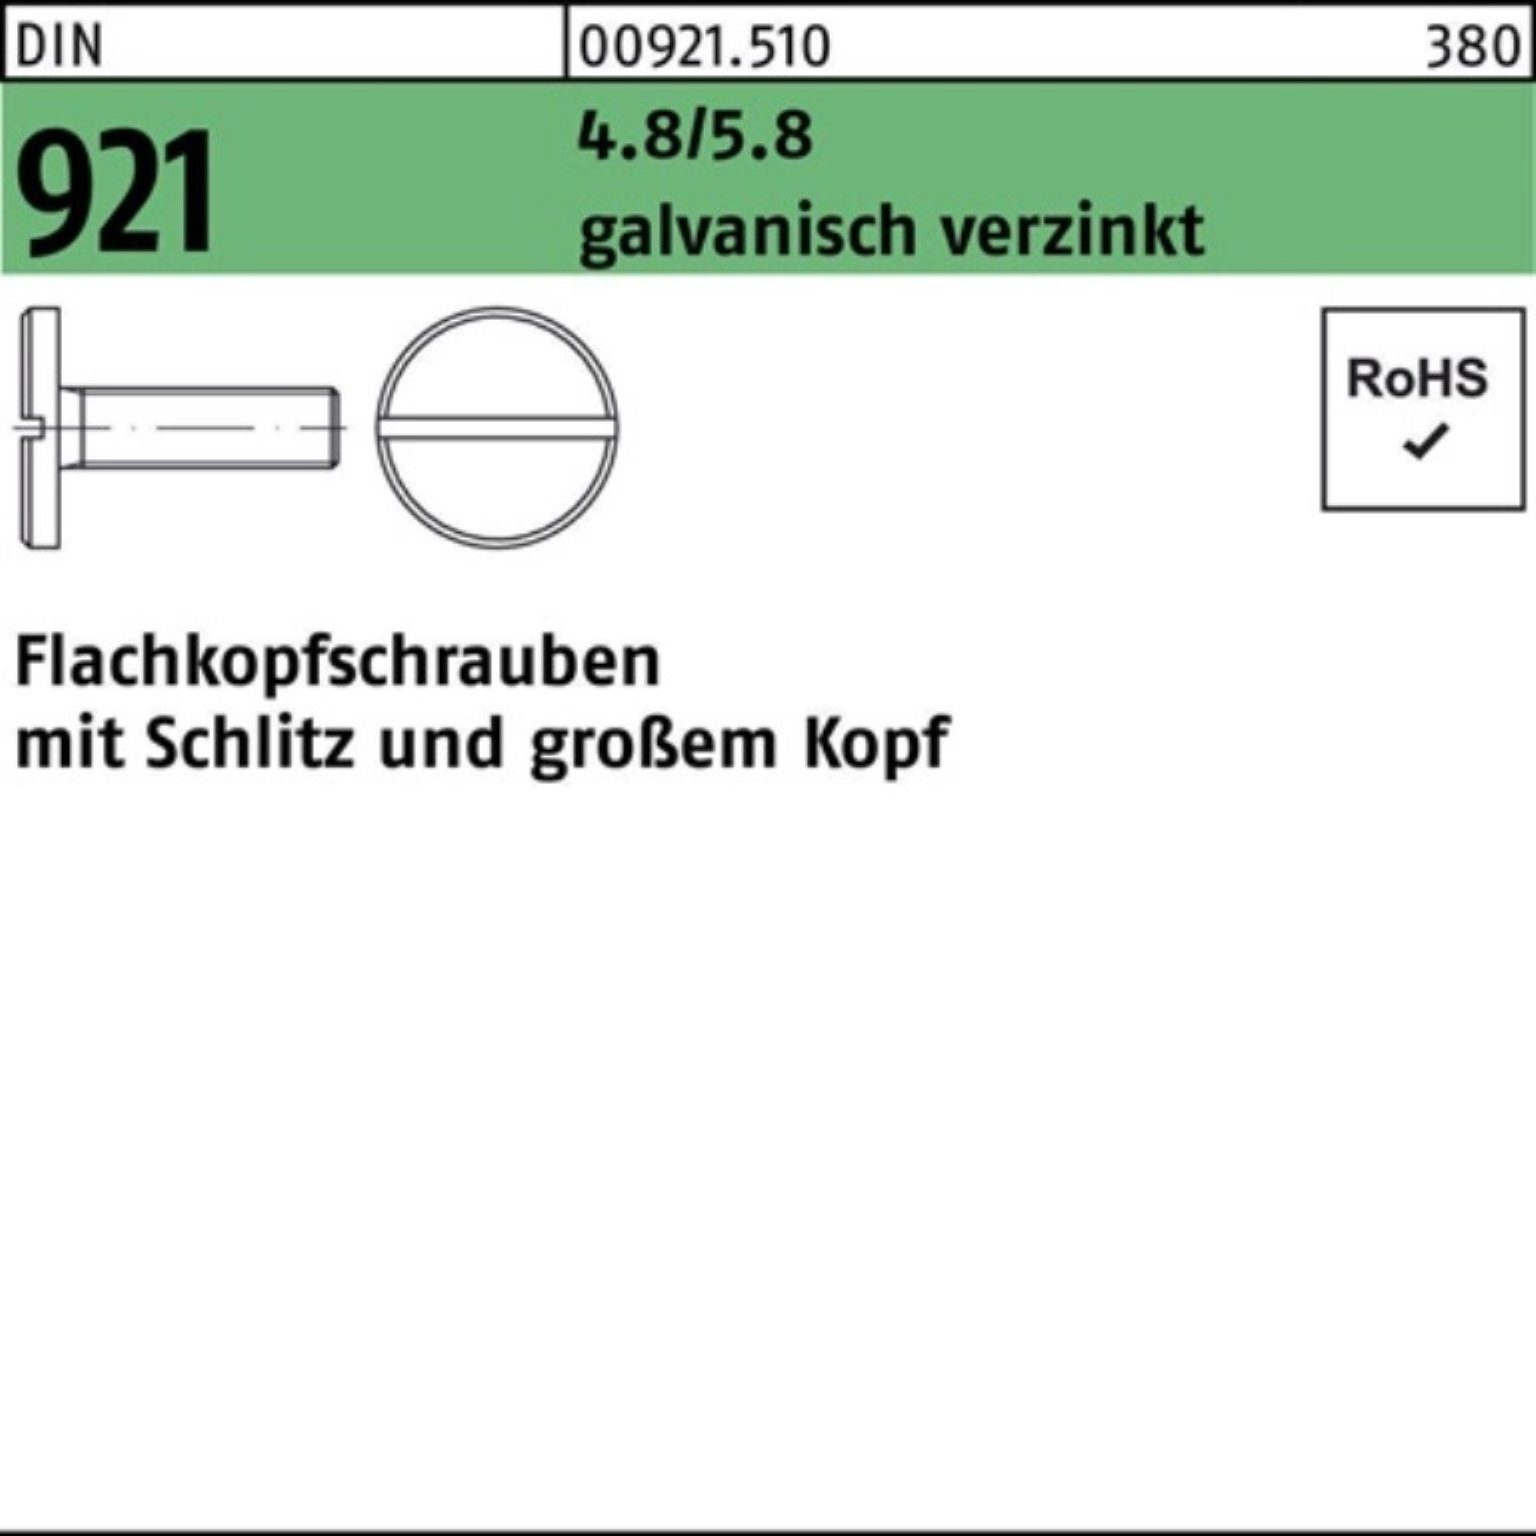 M5x Flachkopfschraube 4.8/5.8 8 Schlitz Reyher 921 DIN 100er Schraube galv.verz. Pack